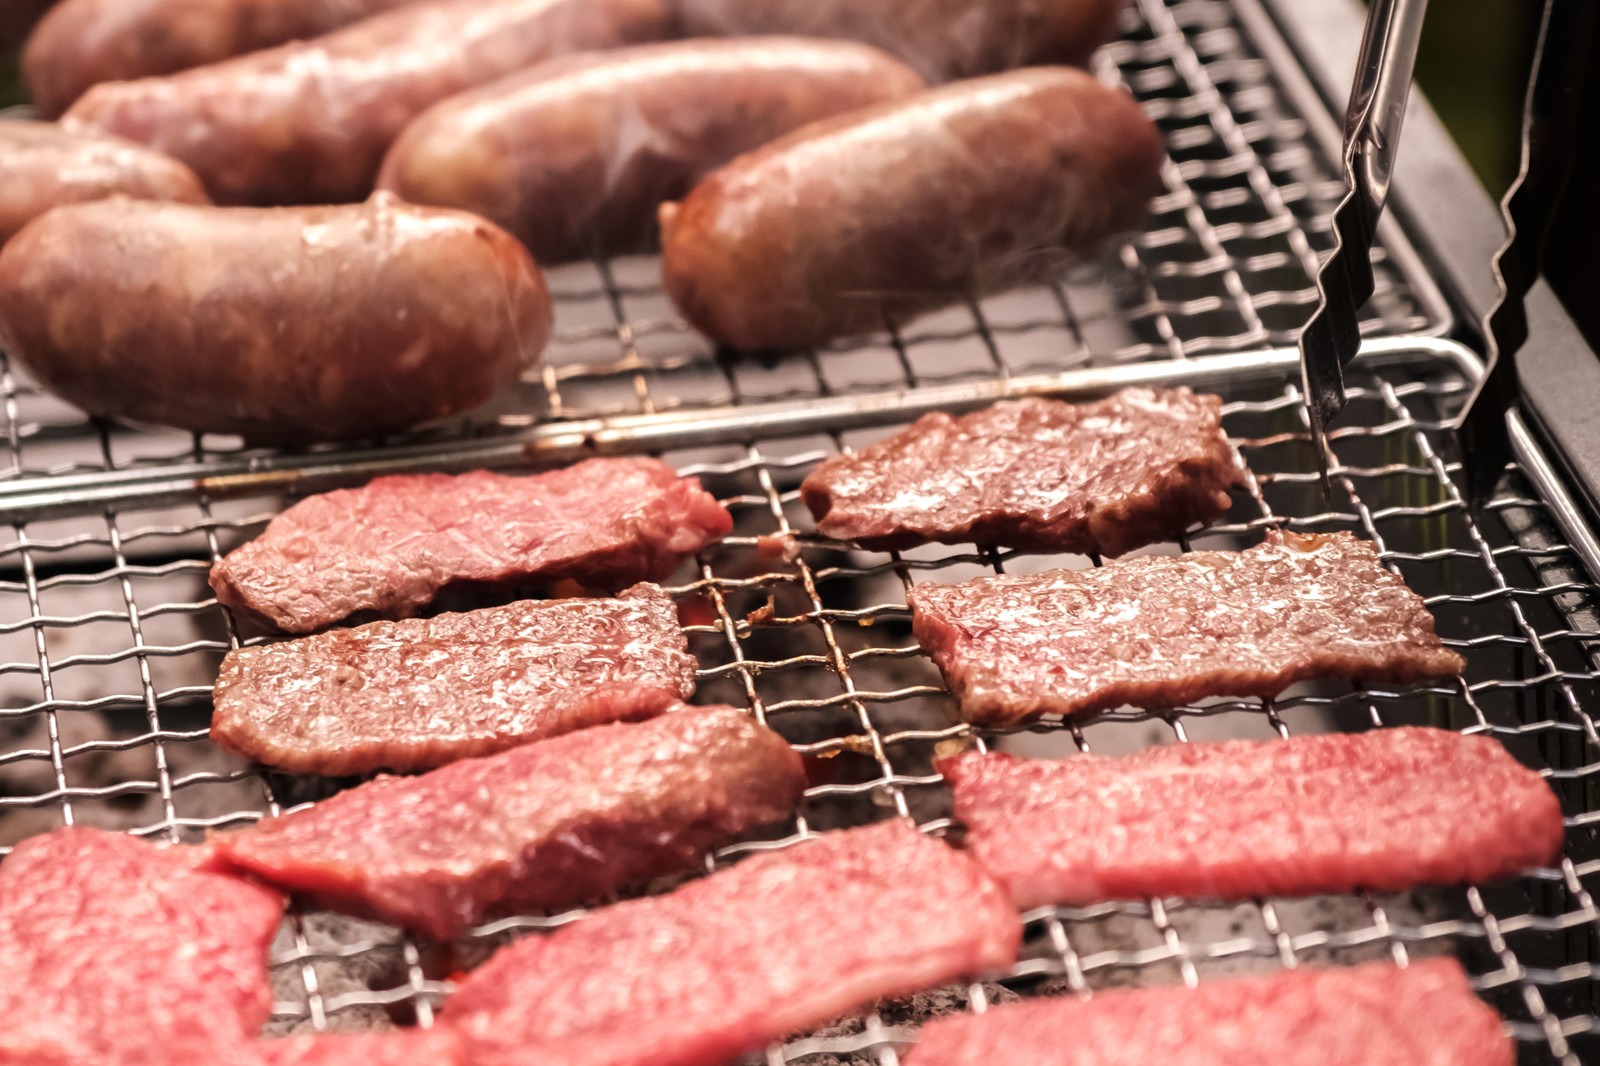 【神奈川県厚木市の求人】肉の街厚木で肉の加工やパック詰め作業